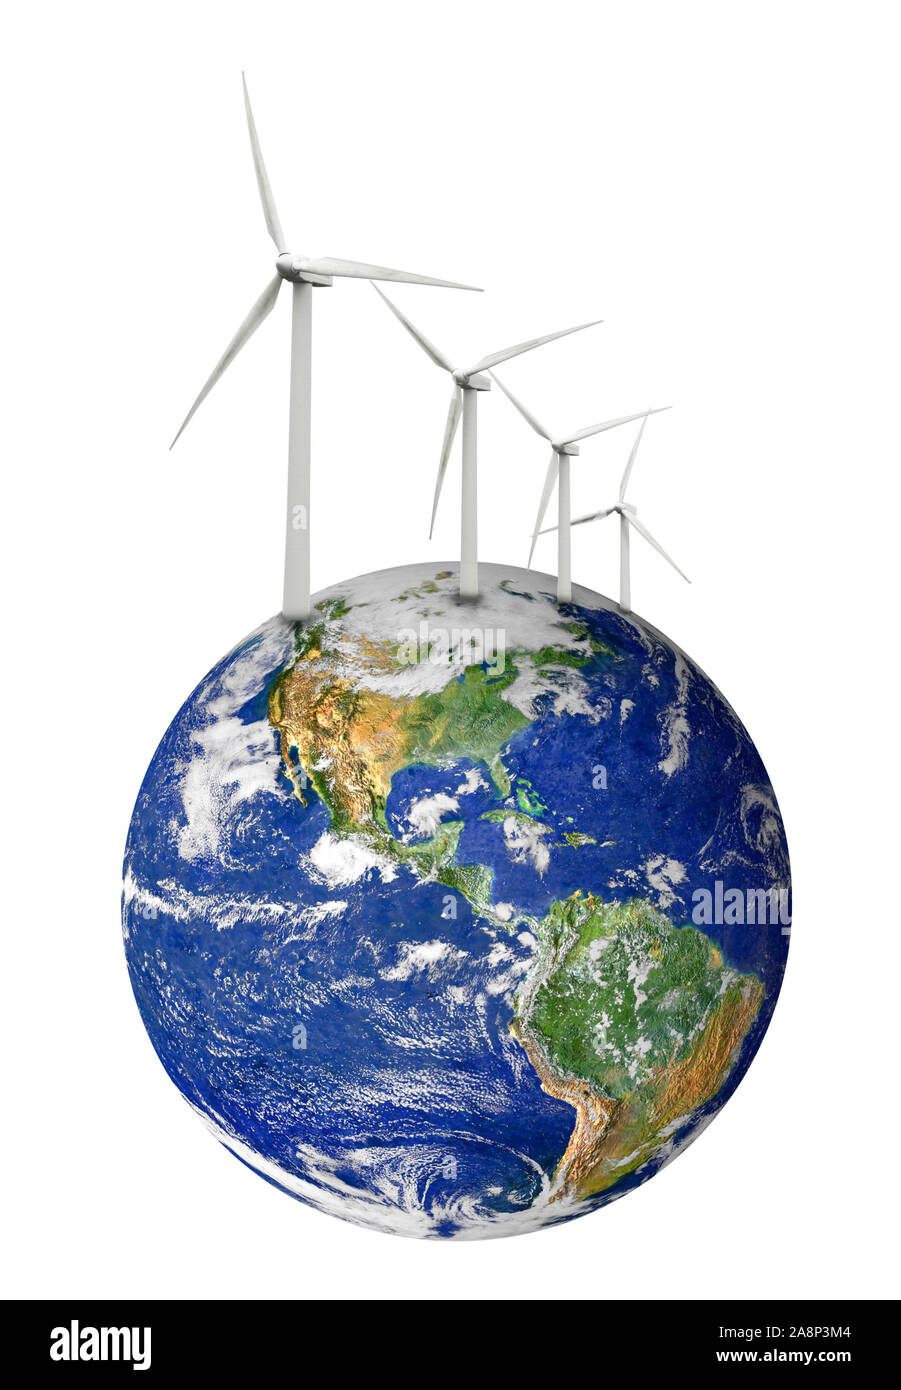 Der Planet Erde mit wind turbine Stockfoto